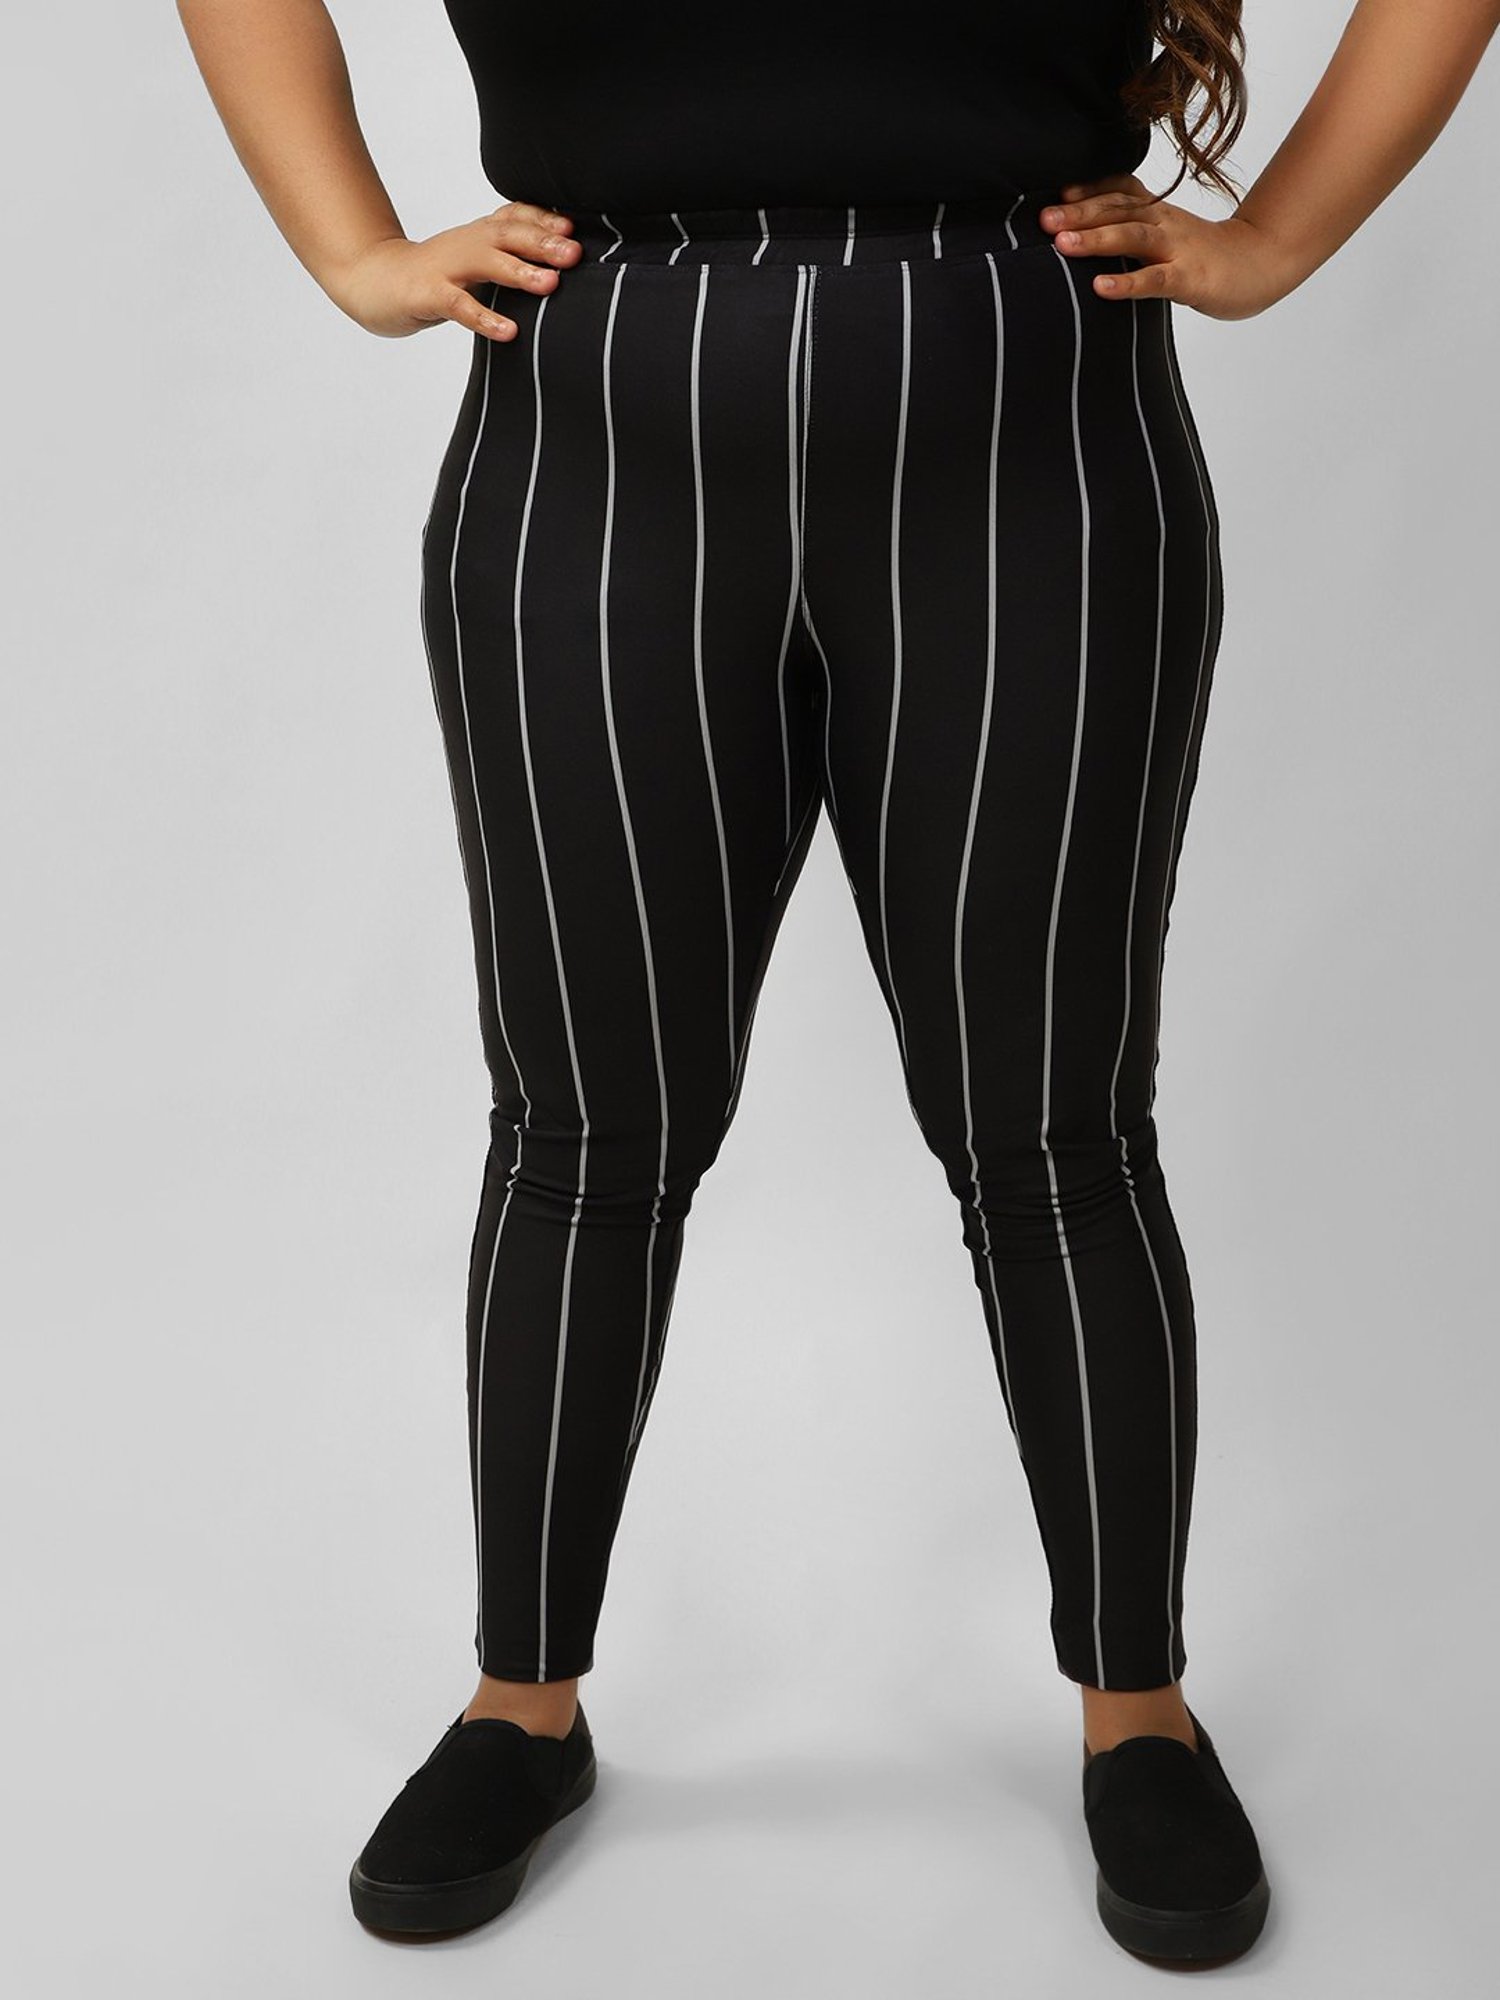 Lululemon Gray Striped Leggings Size 8 | eBay